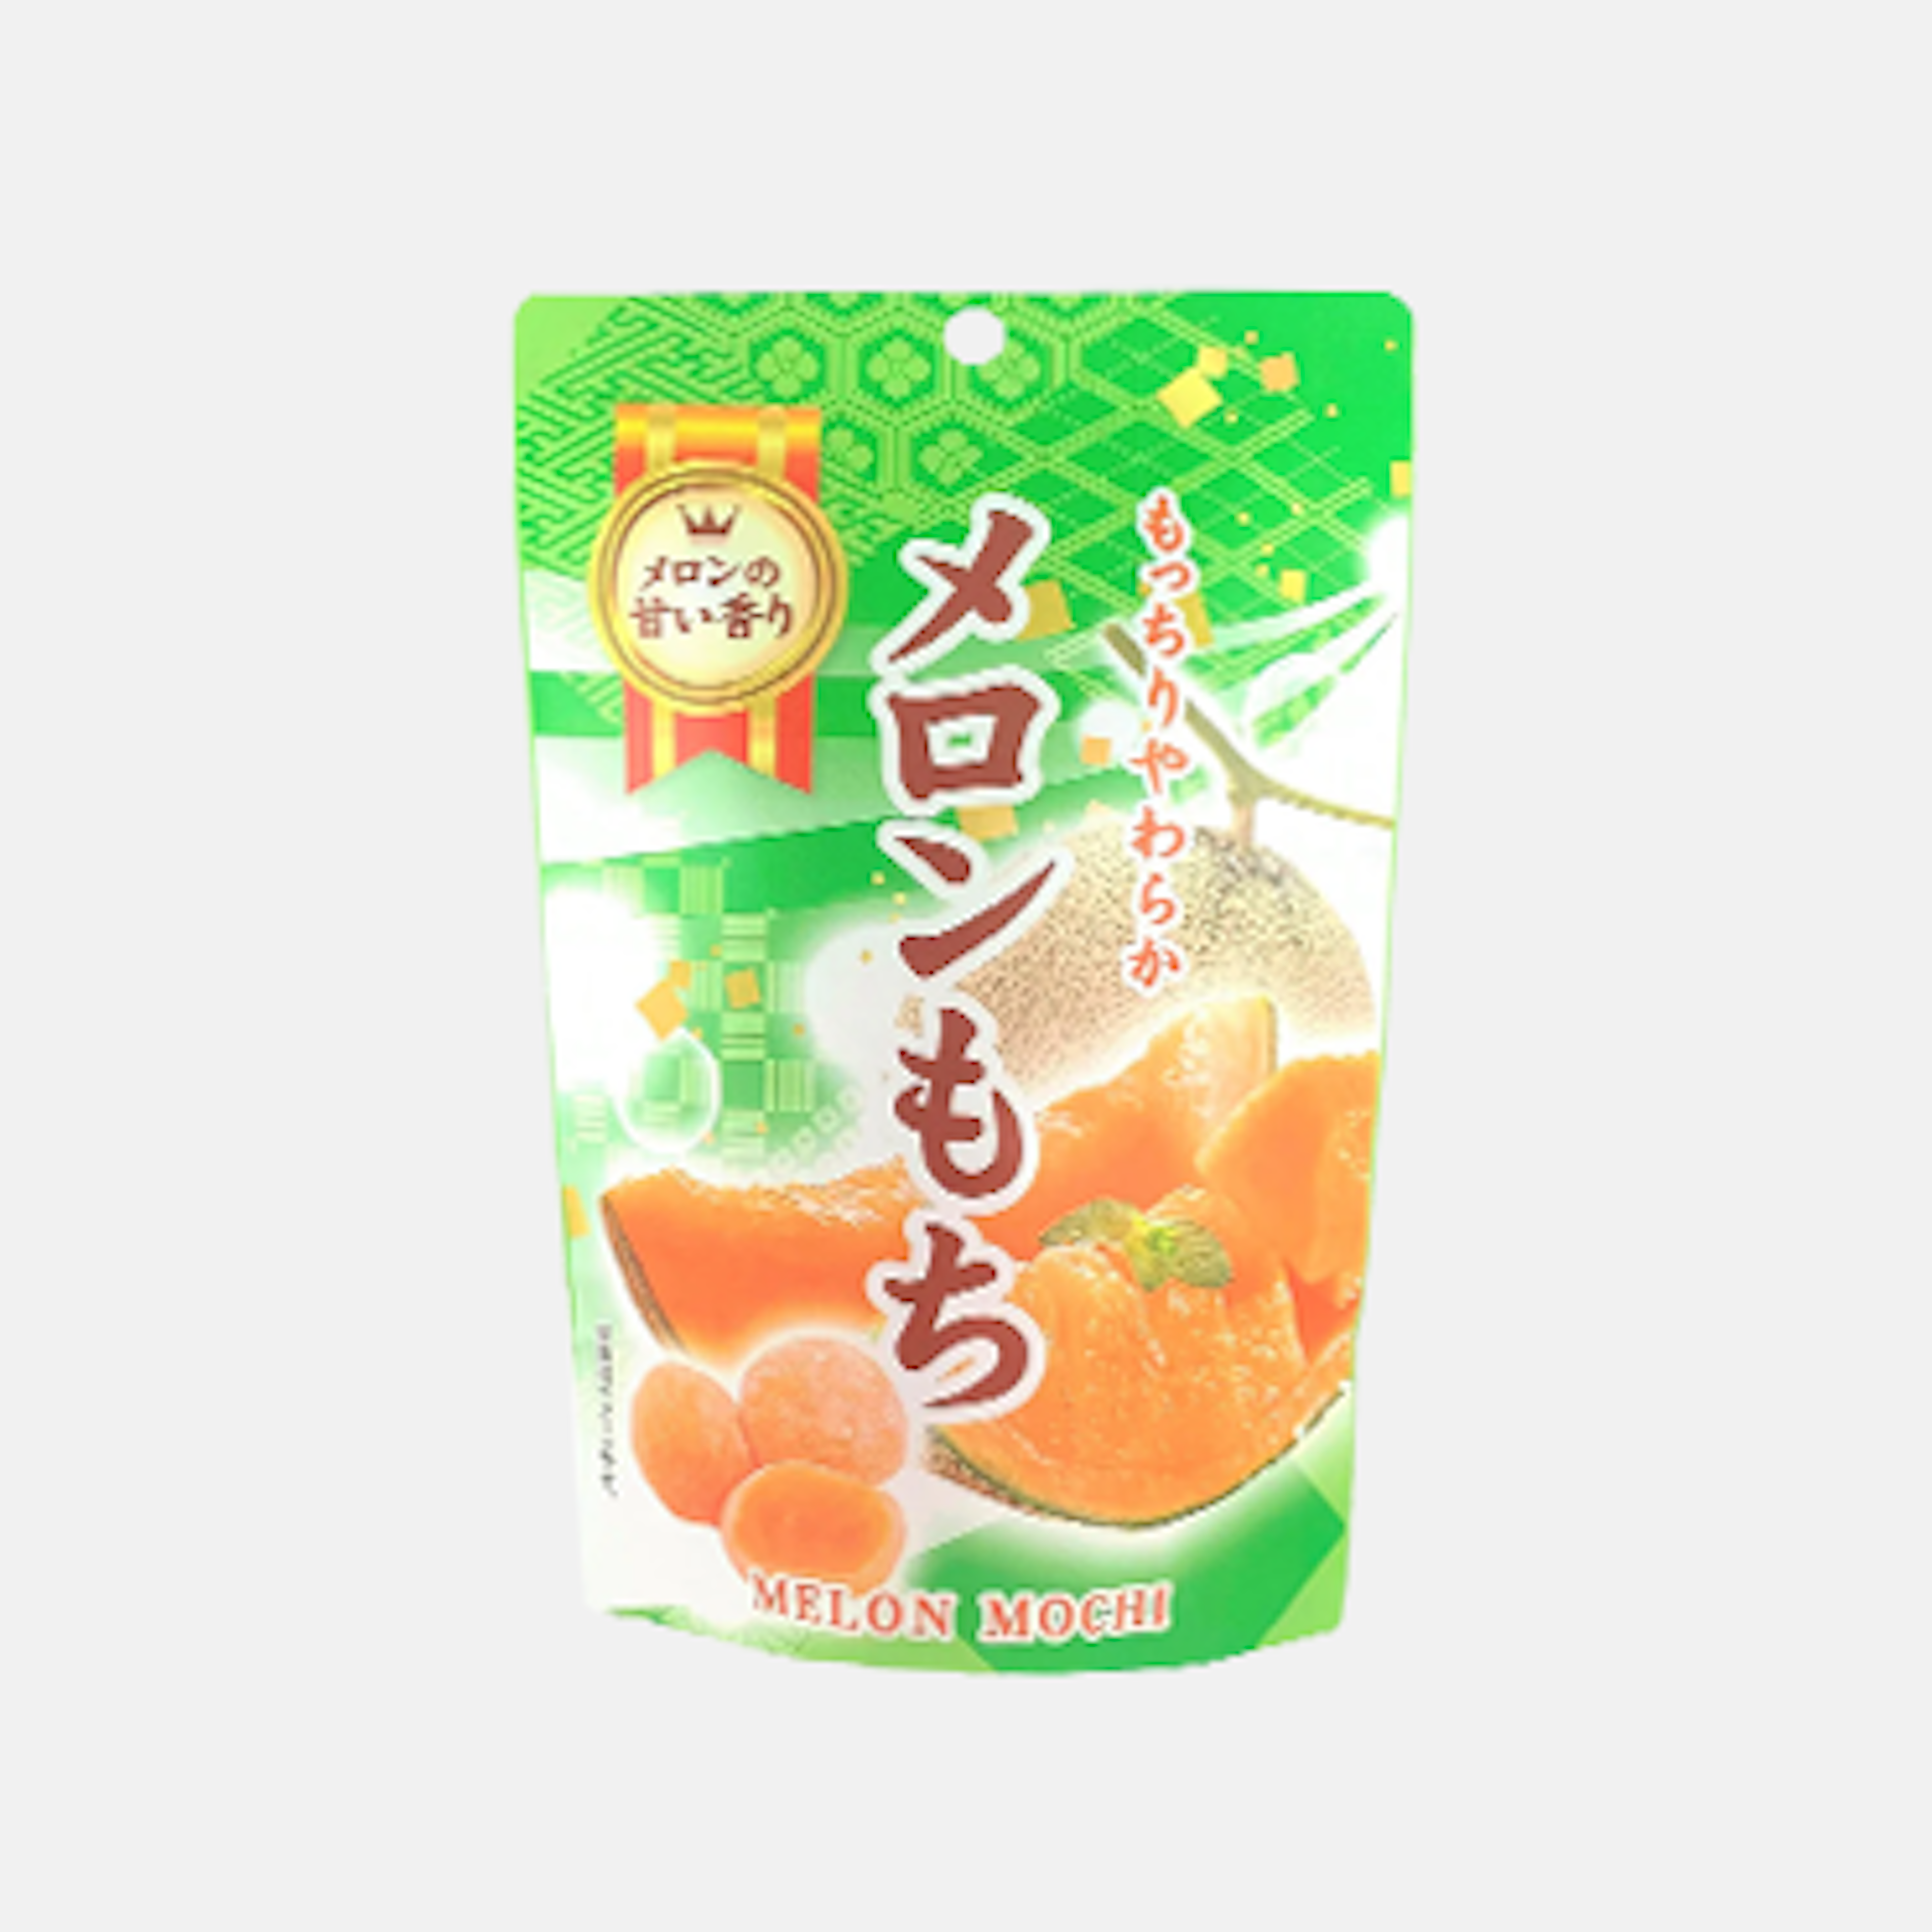 Seiki Melon Mochi 130g - Süße und fruchtige japanische Leckerei